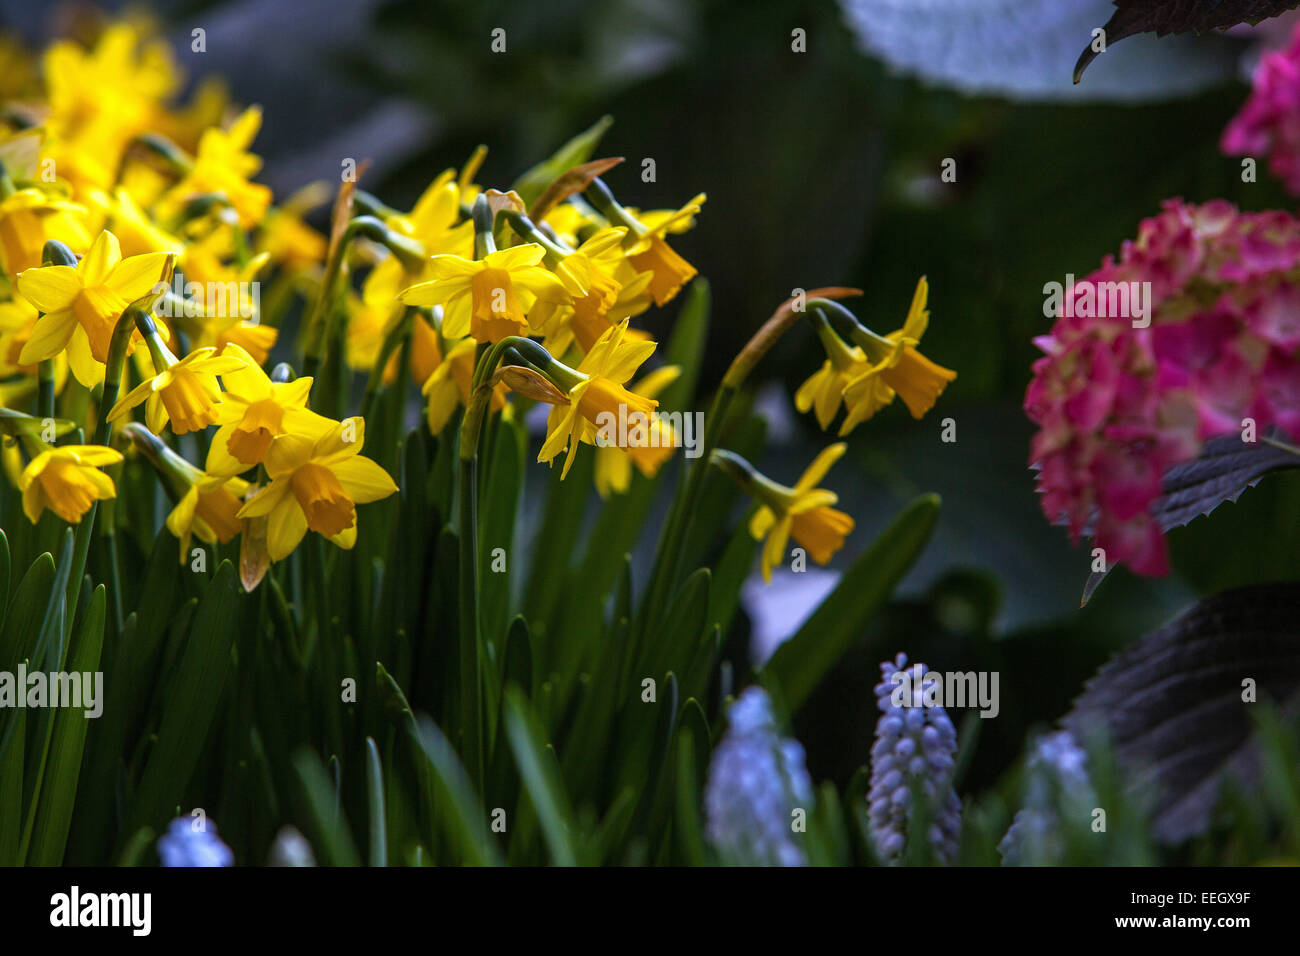 Narciso giallo primavera giardino narcischi fiori narcischi Foto Stock